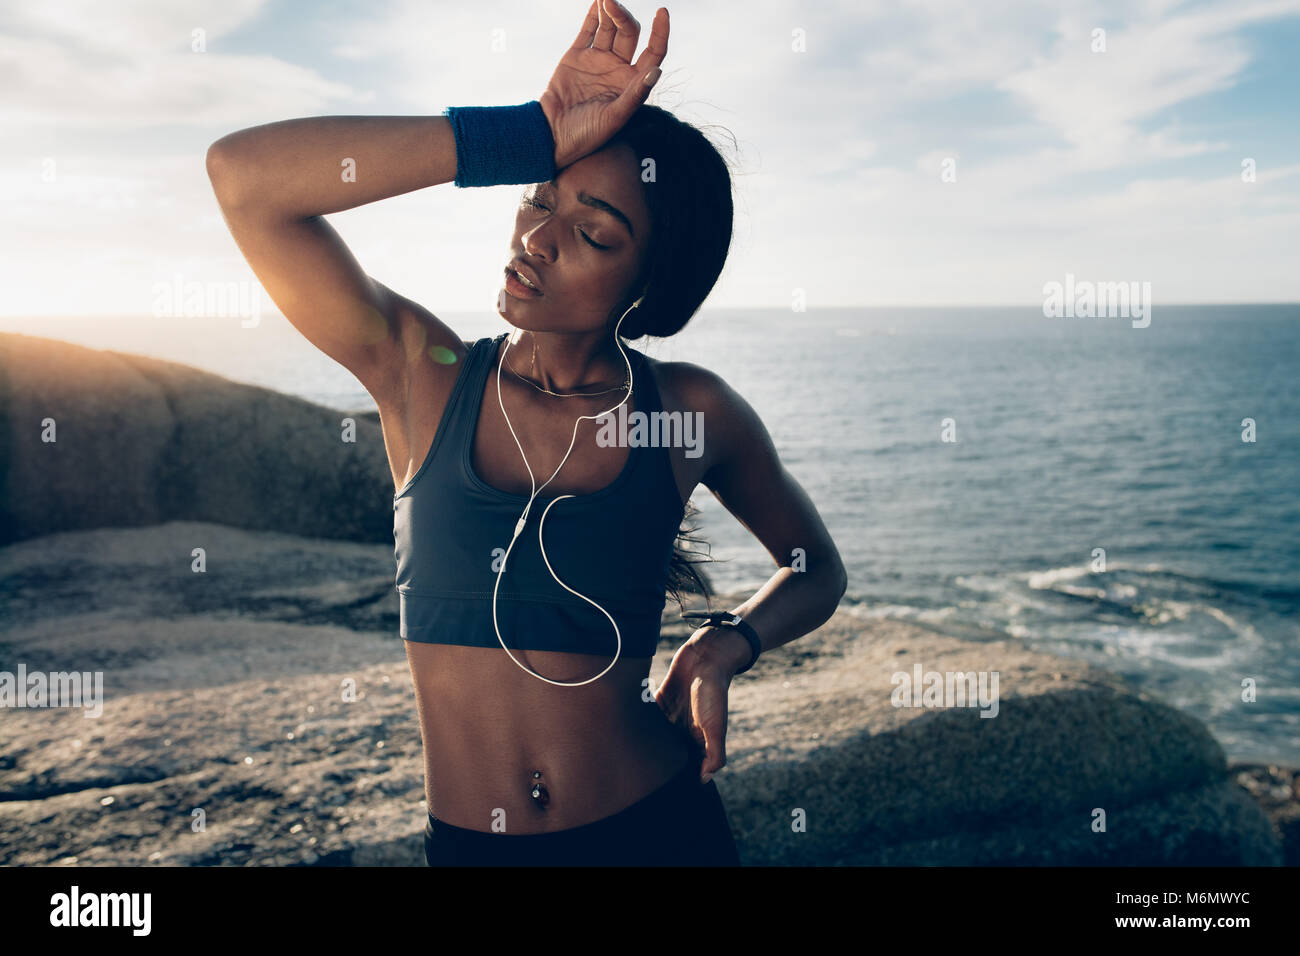 Fitness Frau auf der Suche nach intensiven körperlichen Training müde. Sportlerin stehen über die Felsen am Strand mit der Hand auf den Kopf. Stockfoto